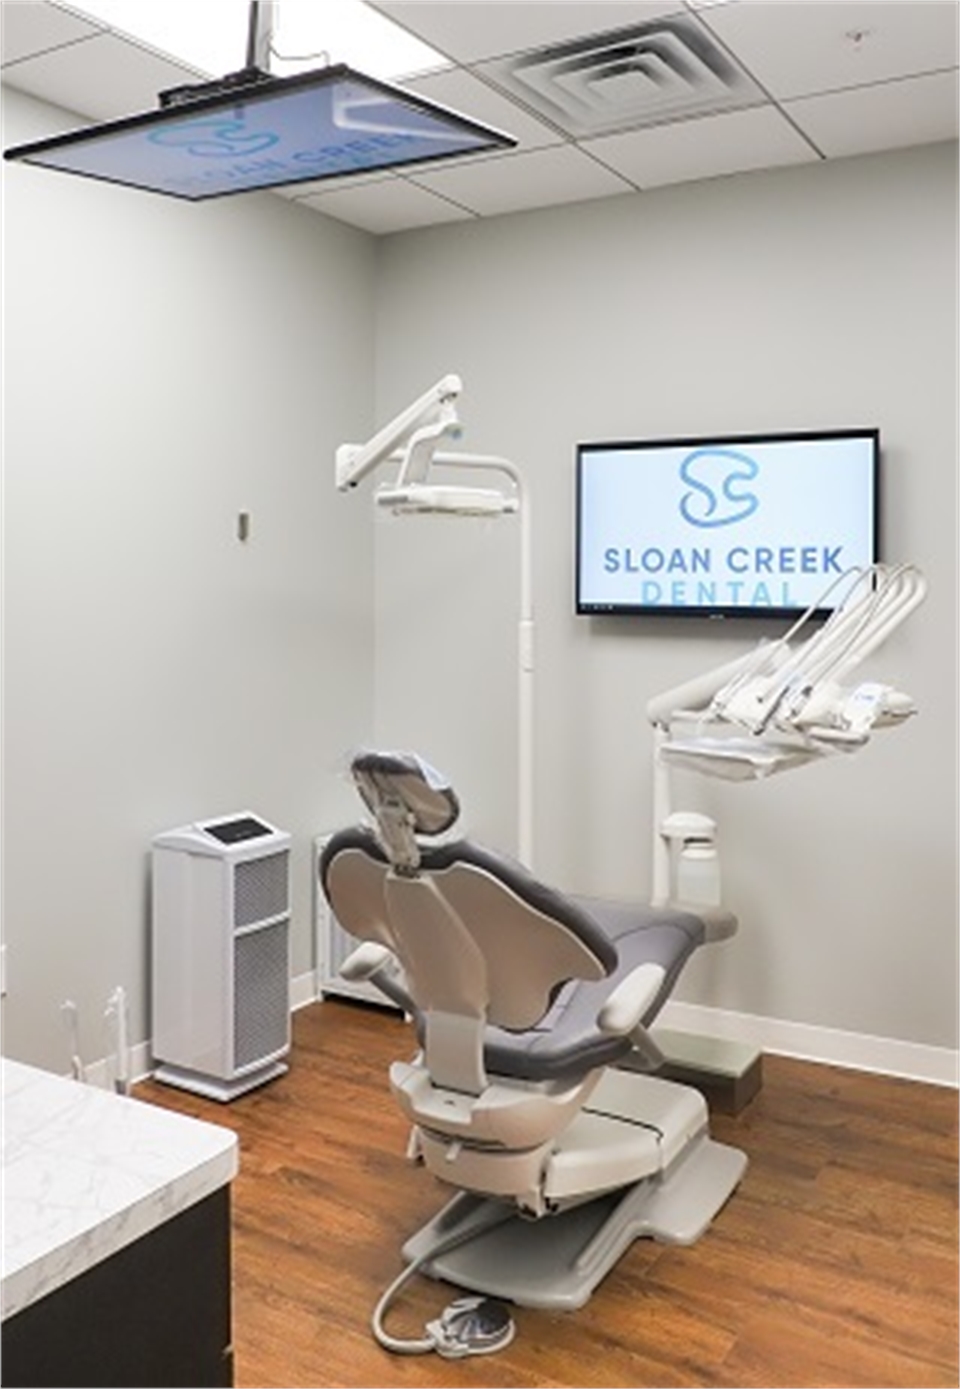 Sloan Creek Dental